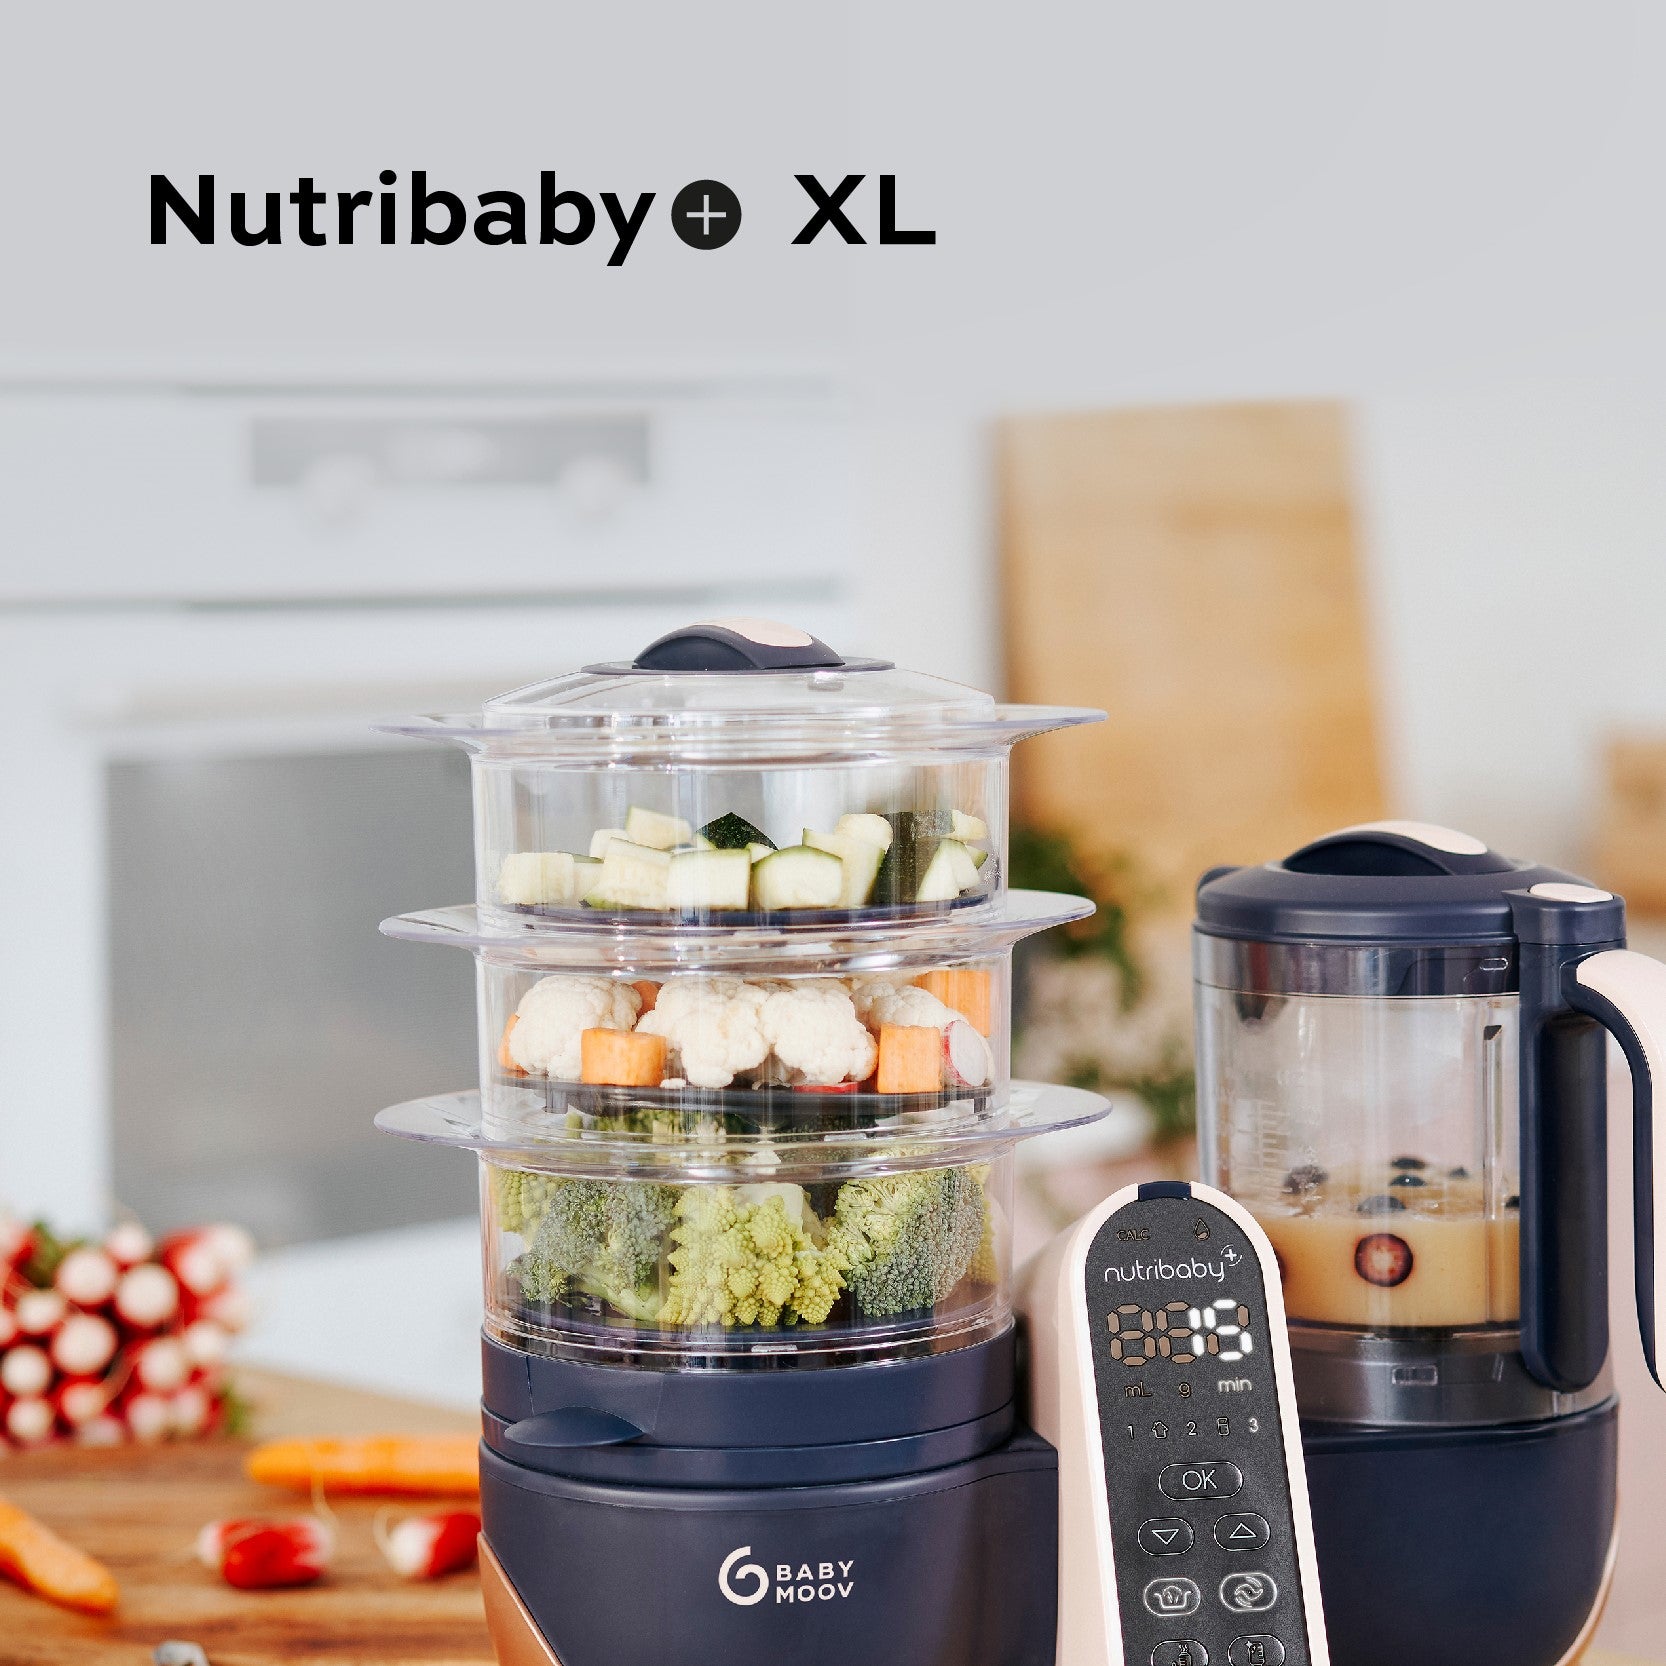 ⭐ Babymoov Nutribaby plus ⭐ - 6in1: steaming, blending, defrosting,  heating, sterilizing, and heating bottles - Preserves nutrients: cook…